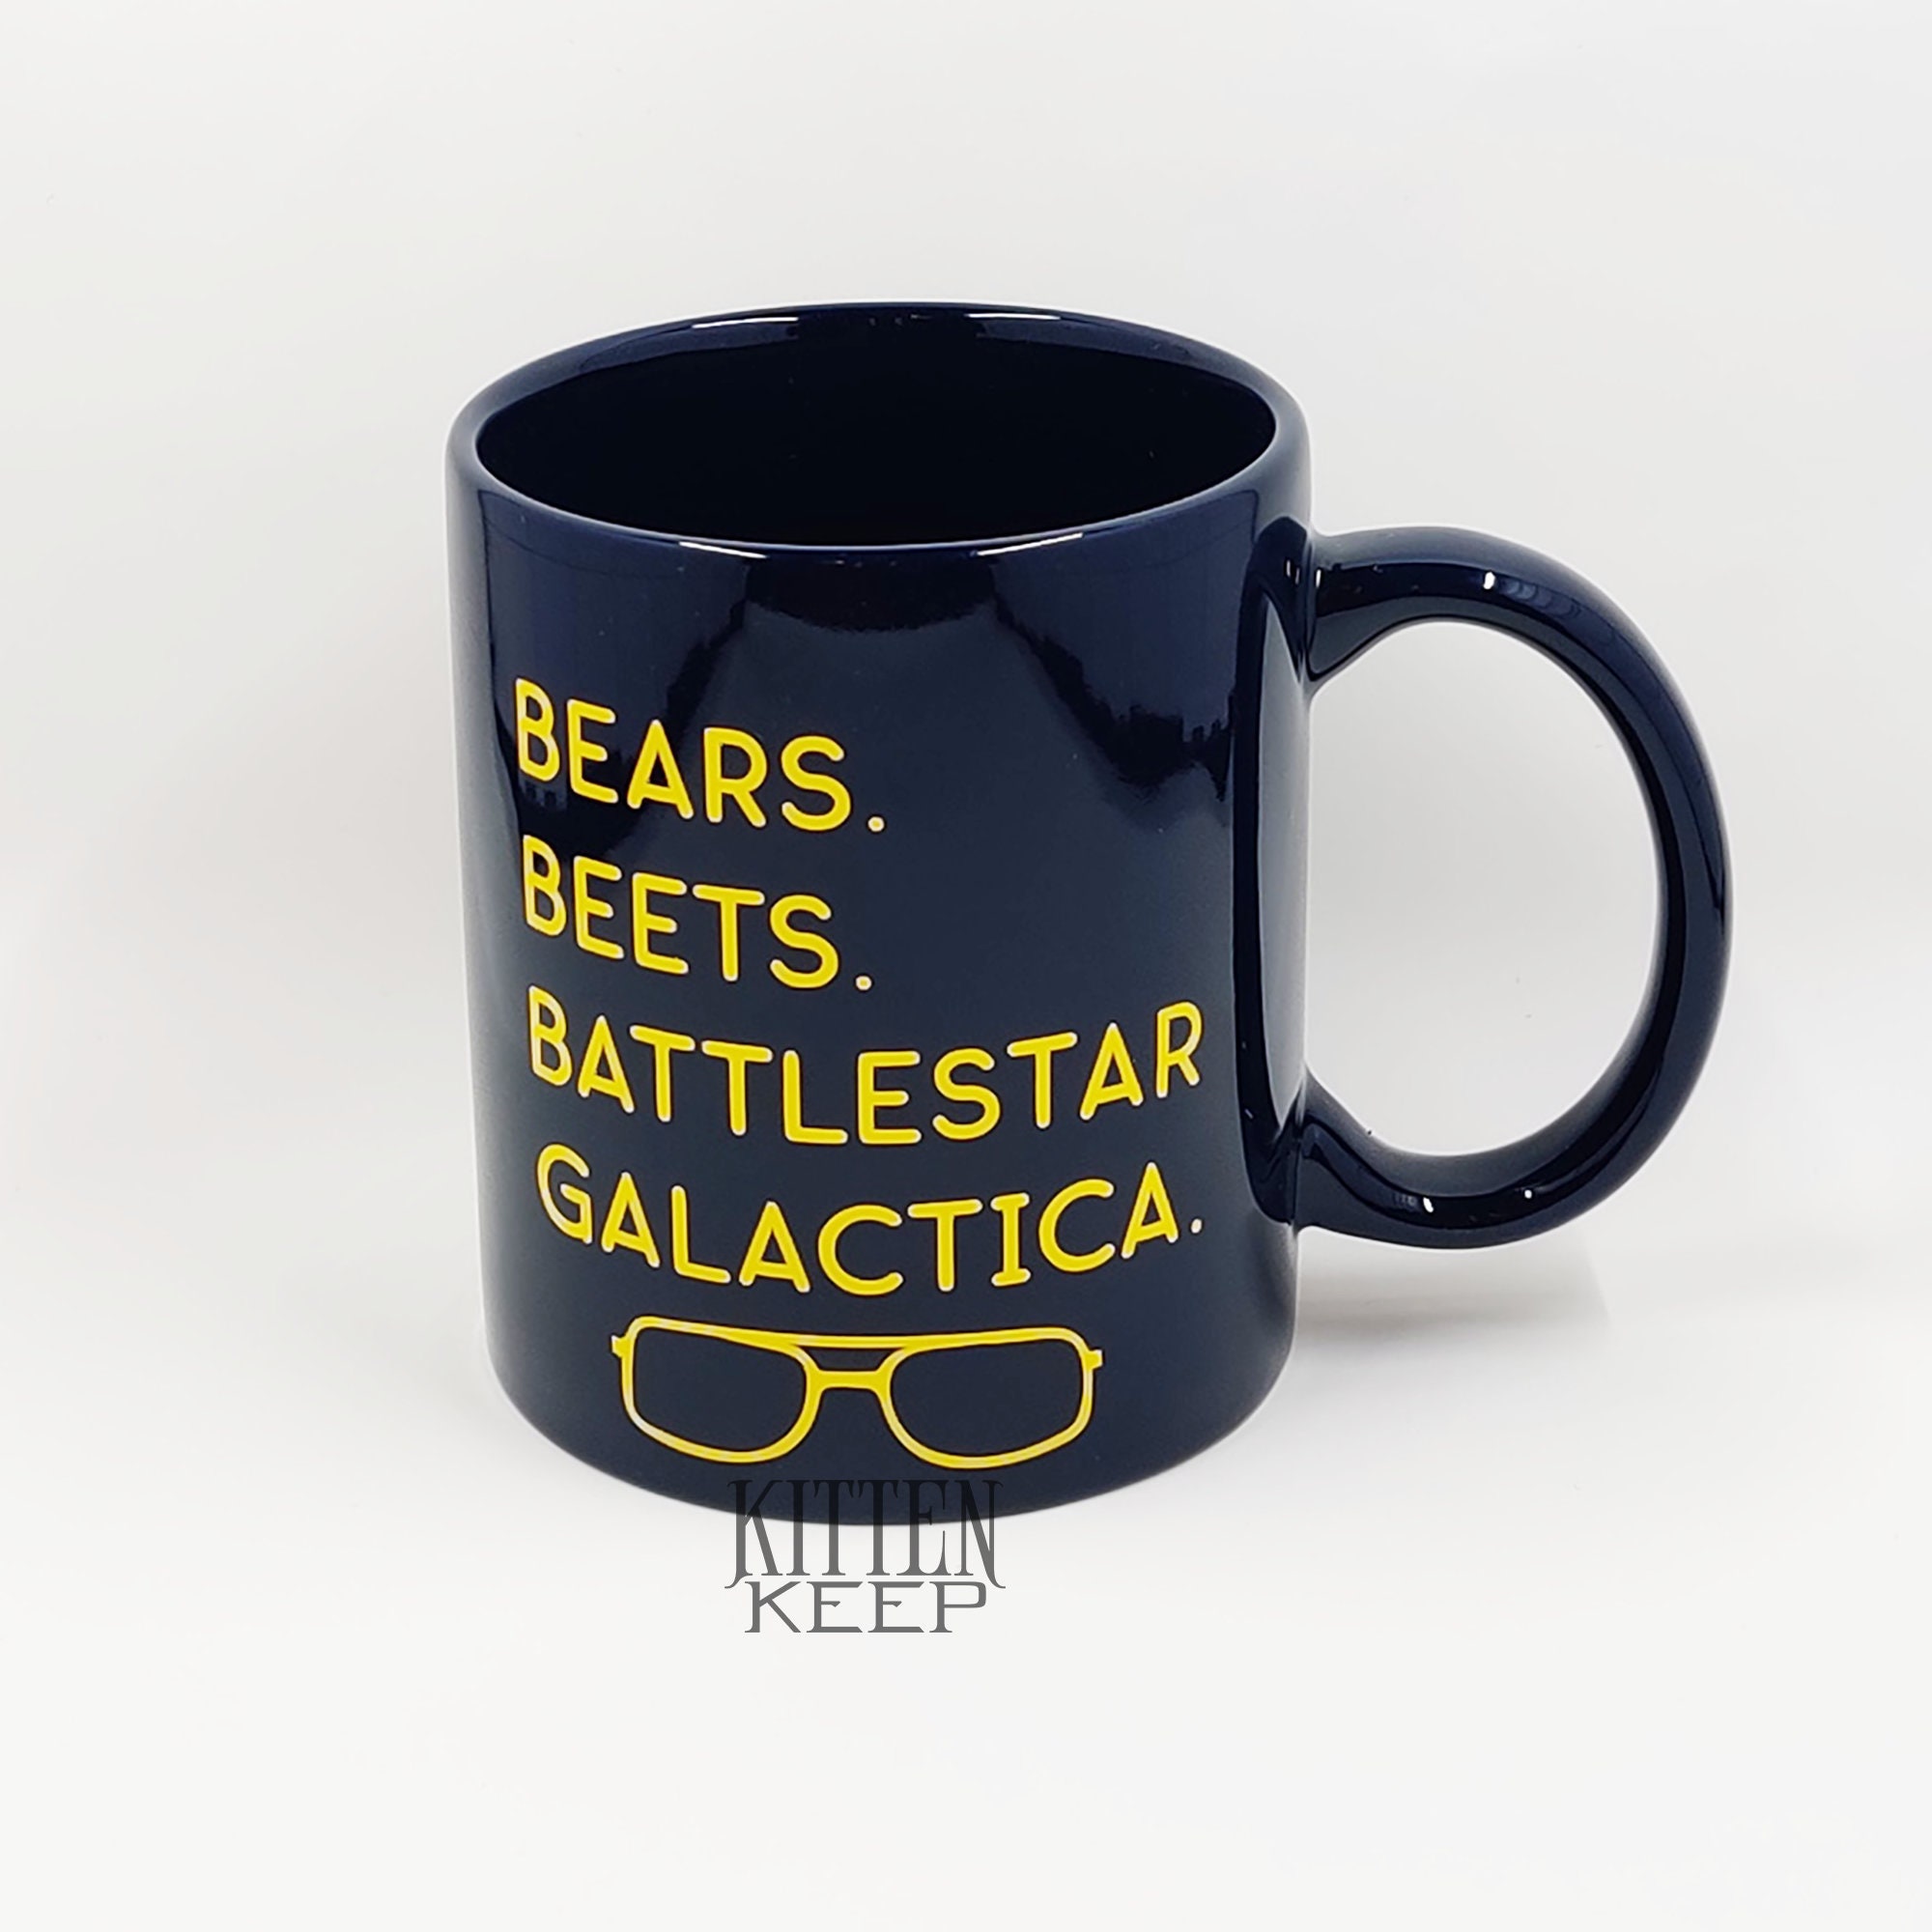 Bears Beets Battlestar Galactica Coffee Mug | Office